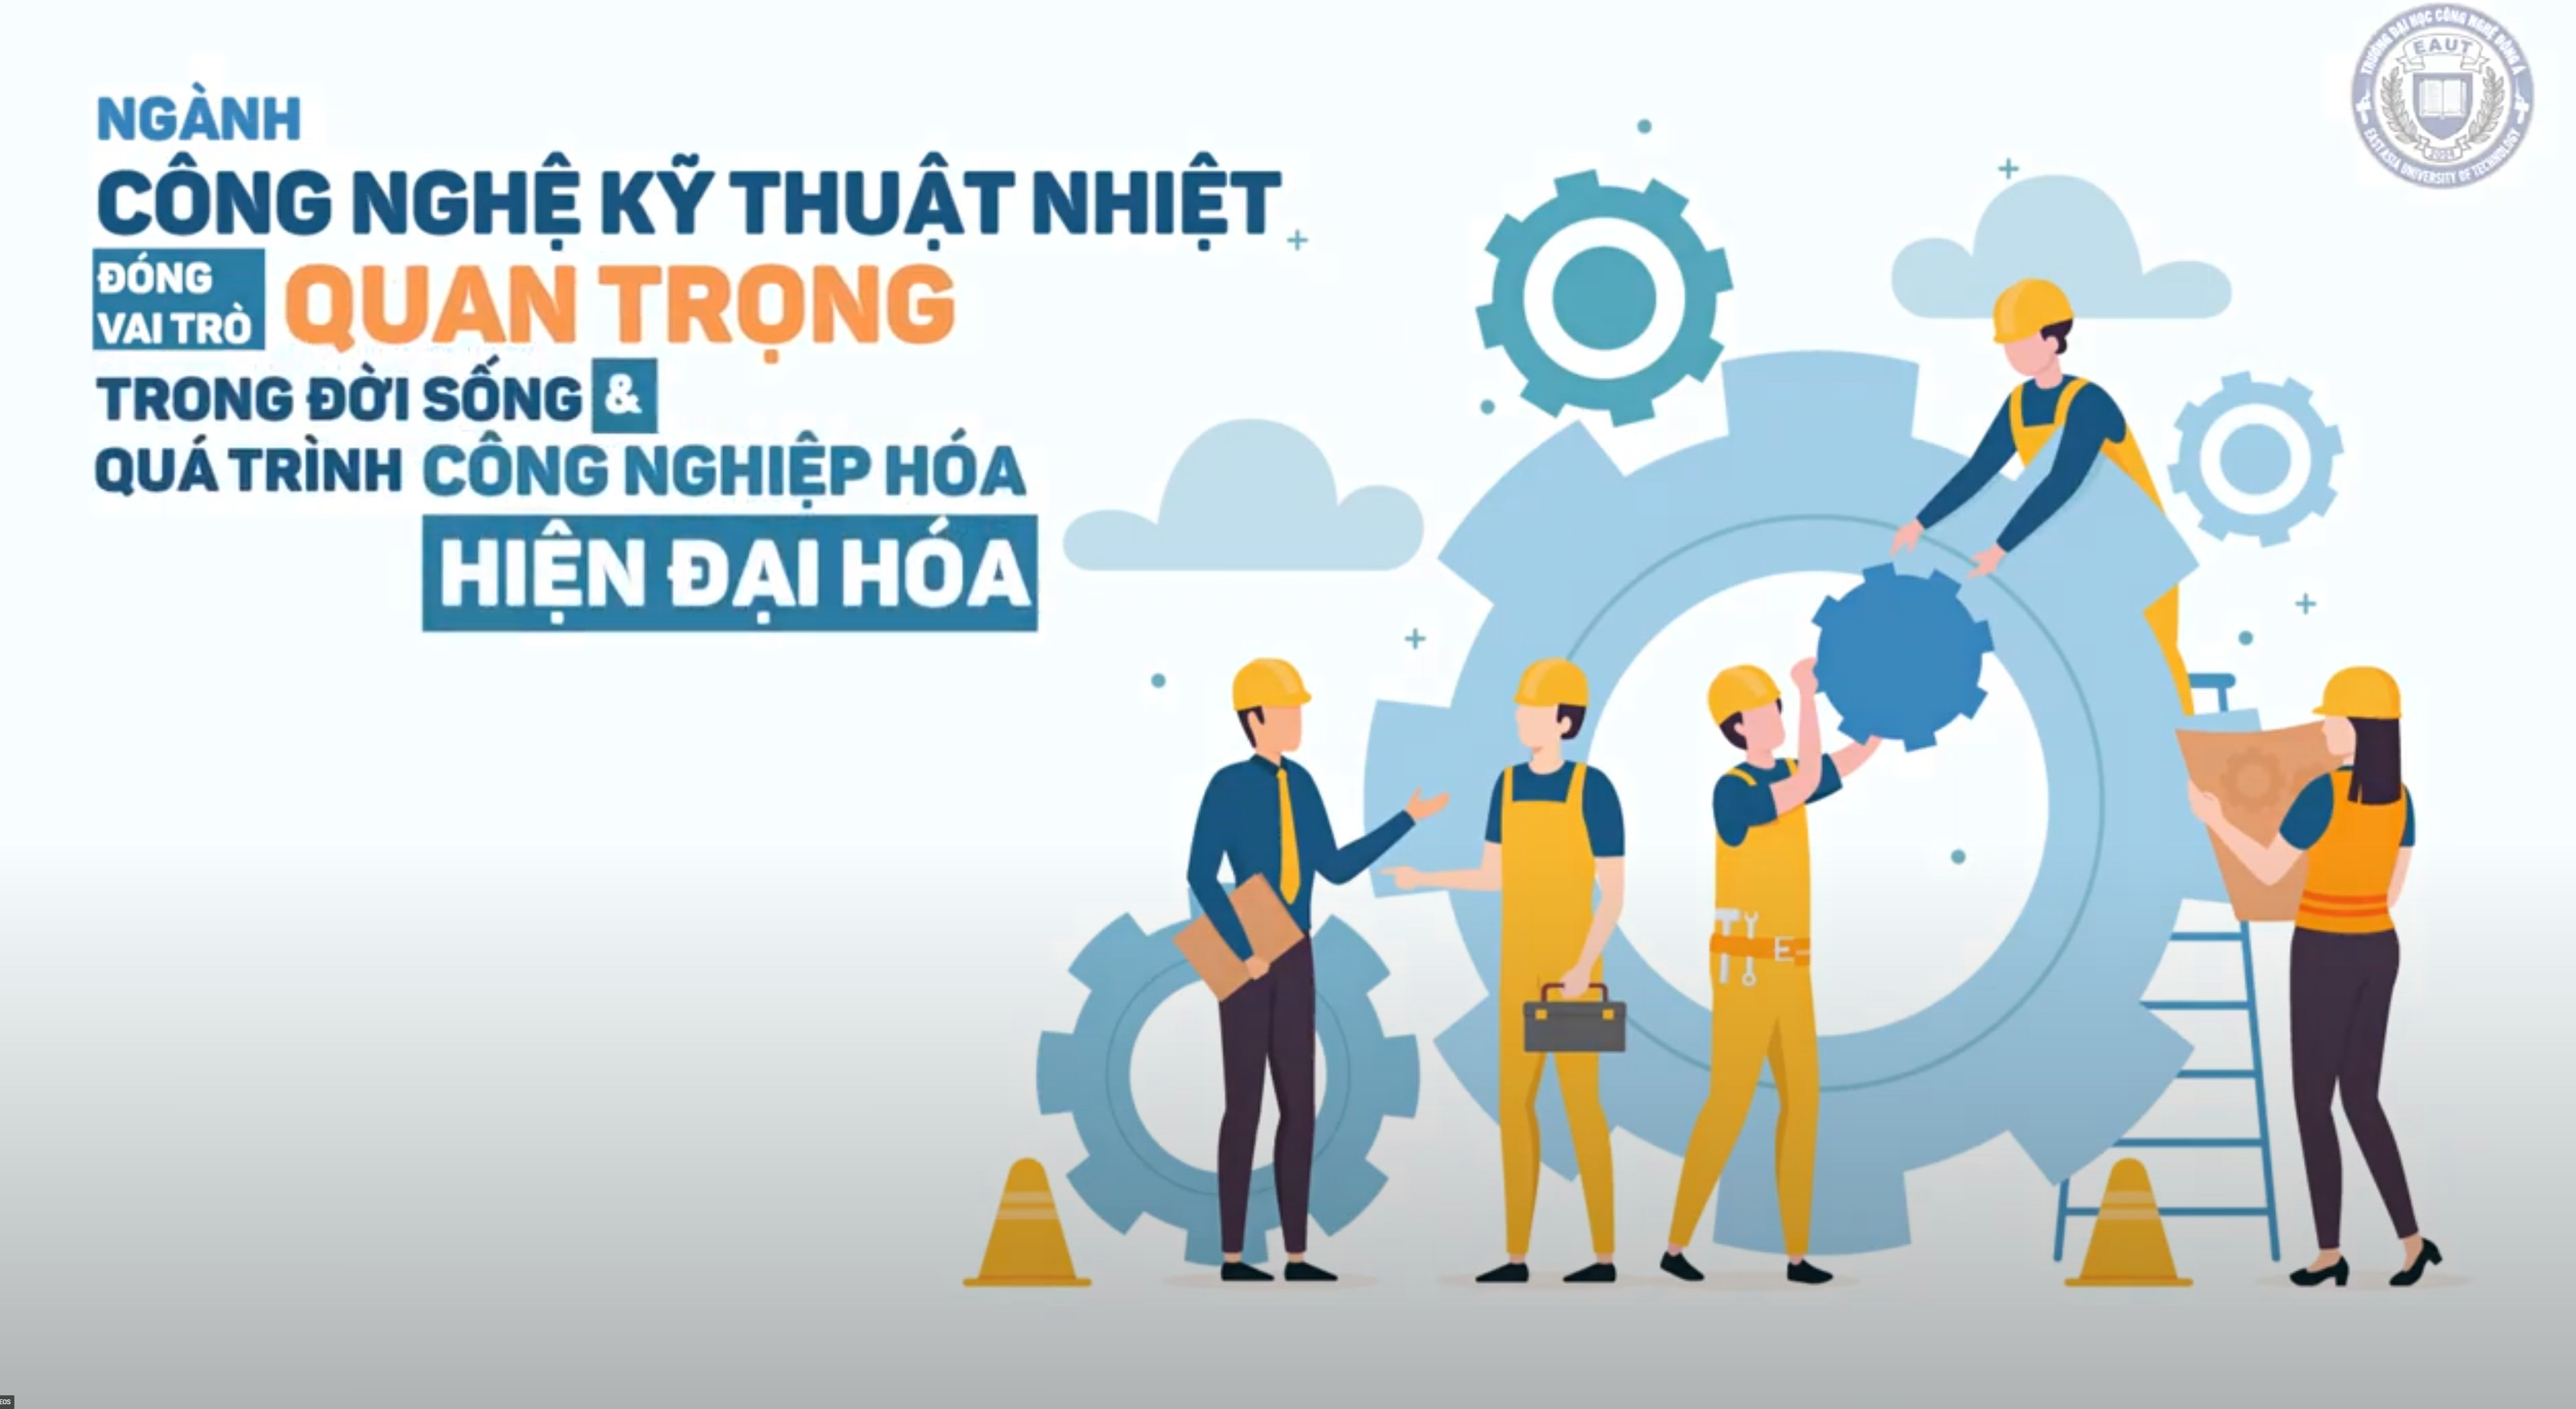 Kỹ thuật nhiệt: Kỹ thuật nhiệt là một lĩnh vực rất quan trọng và giàu tiềm năng trong nền kinh tế của Việt Nam. Nó cung cấp các giải pháp thiết kế, các sản phẩm, dịch vụ liên quan đến tổ hợp năng lượng, điều hoà không khí, đồng hồ thủy tinh, máy đo nhiệt độ và các sản phẩm và dịch vụ khác. Tham gia vào ngành này là một cơ hội để bạn vận dụng trí tuệ của mình vào công việc và làm việc trong một lĩnh vực quan trọng cho sự phát triển của đất nước.